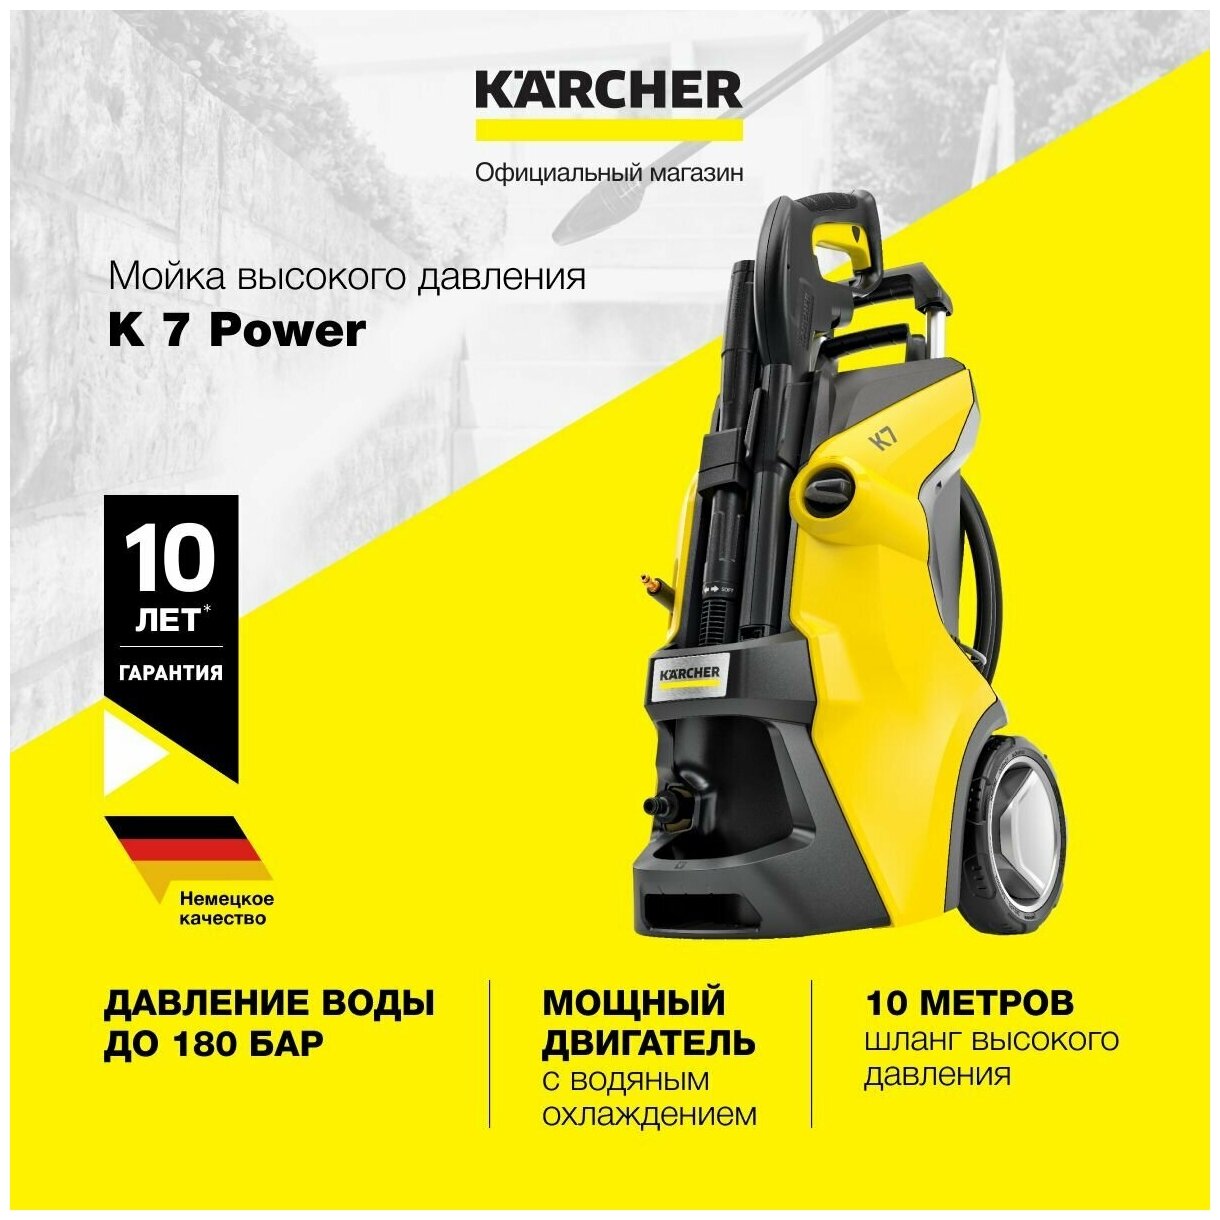 Мойка высокого давления Karcher K 7 Power 1.317-150.0 для автомобилей, со шлангом длиной 10 метров, грязевой и струйной фрезой